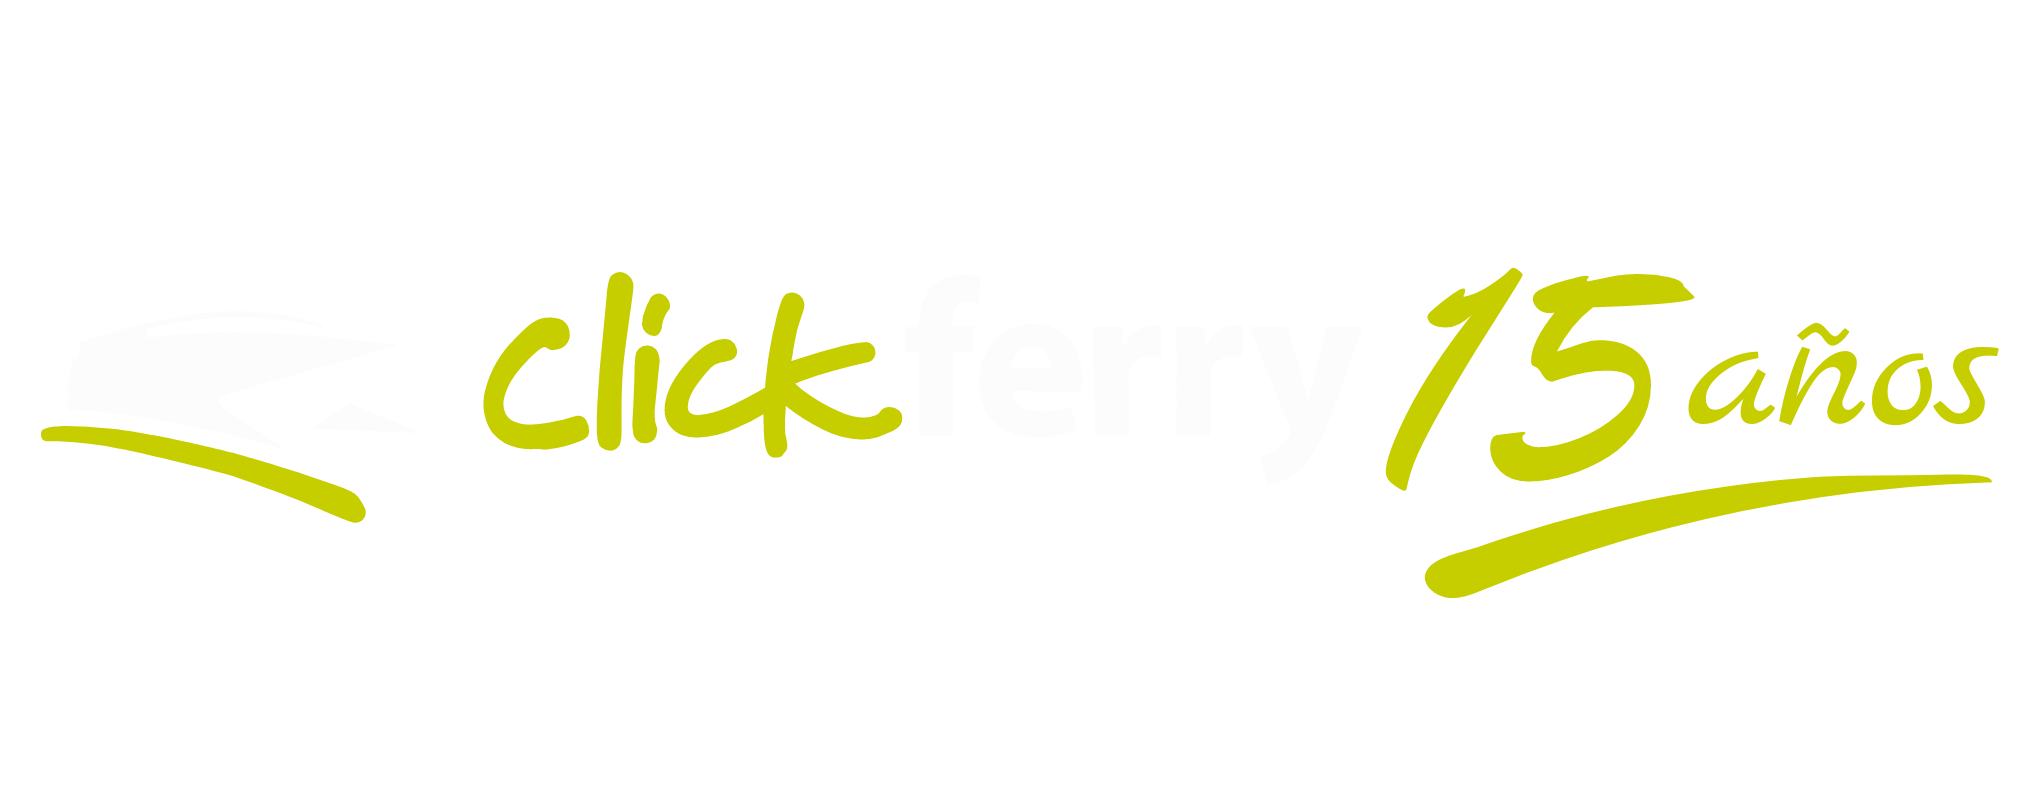 clickferry logo